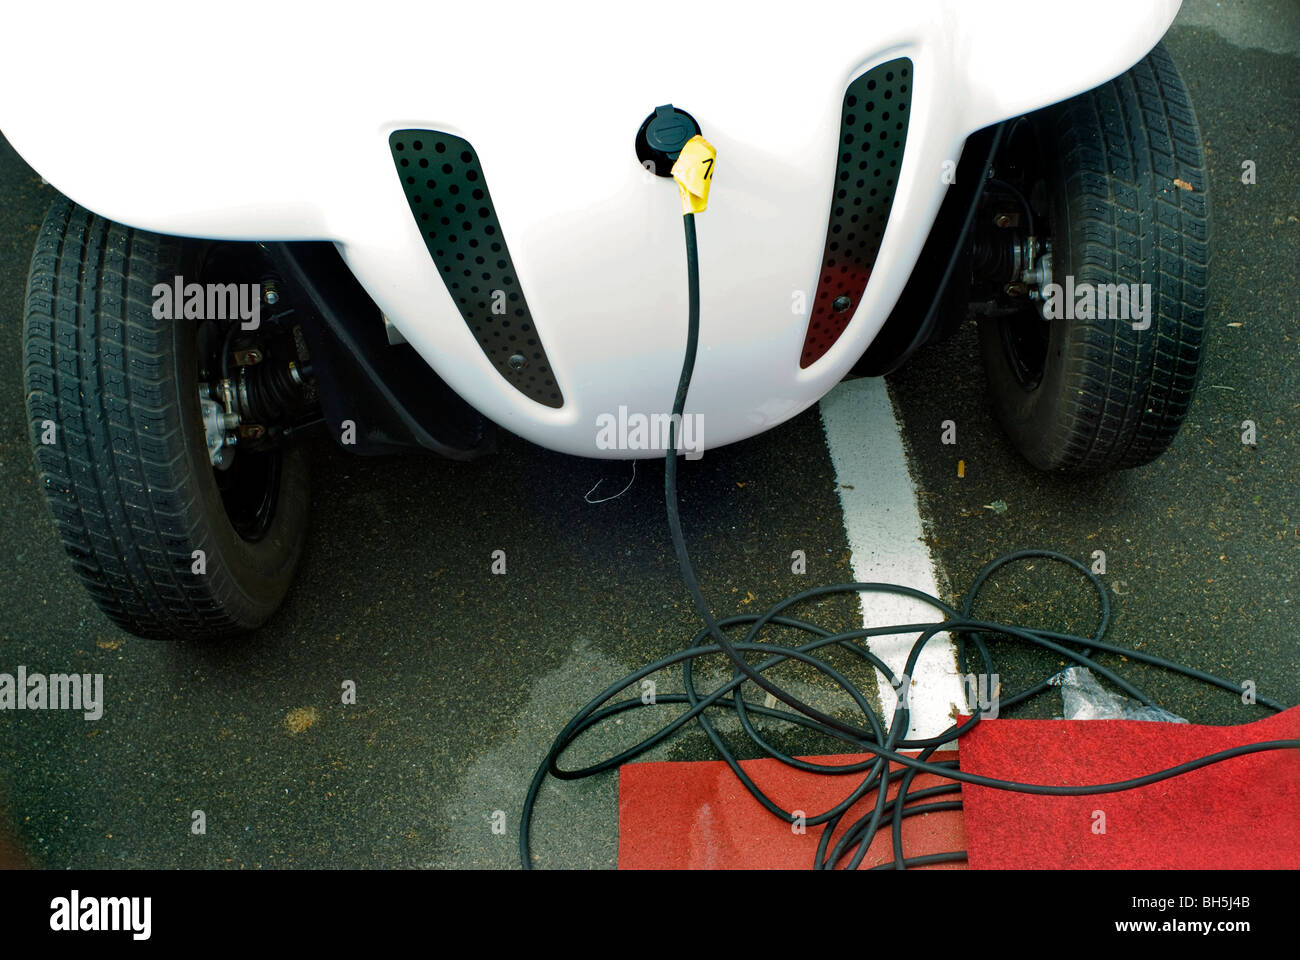 Paris, France, détail, vue de face, Matra Co. Micro voiture électrique rechargeant à l'extérieur sur le parking du salon de l'auto de Paris. Véhicule ultra léger. bouchon Banque D'Images